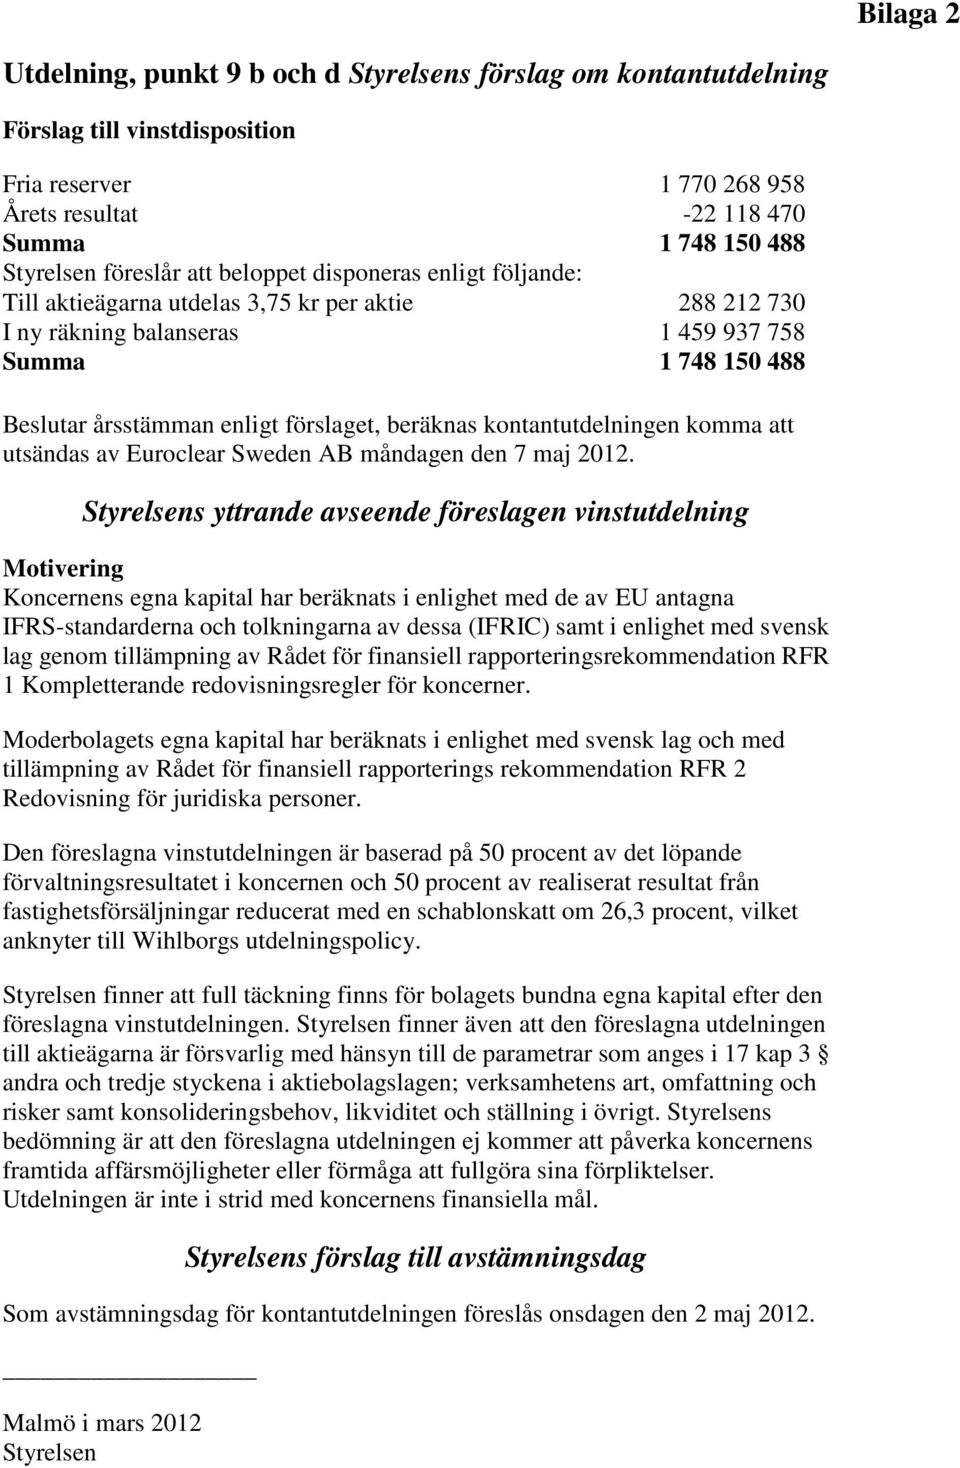 beräknas kontantutdelningen komma att utsändas av Euroclear Sweden AB måndagen den 7 maj 2012.